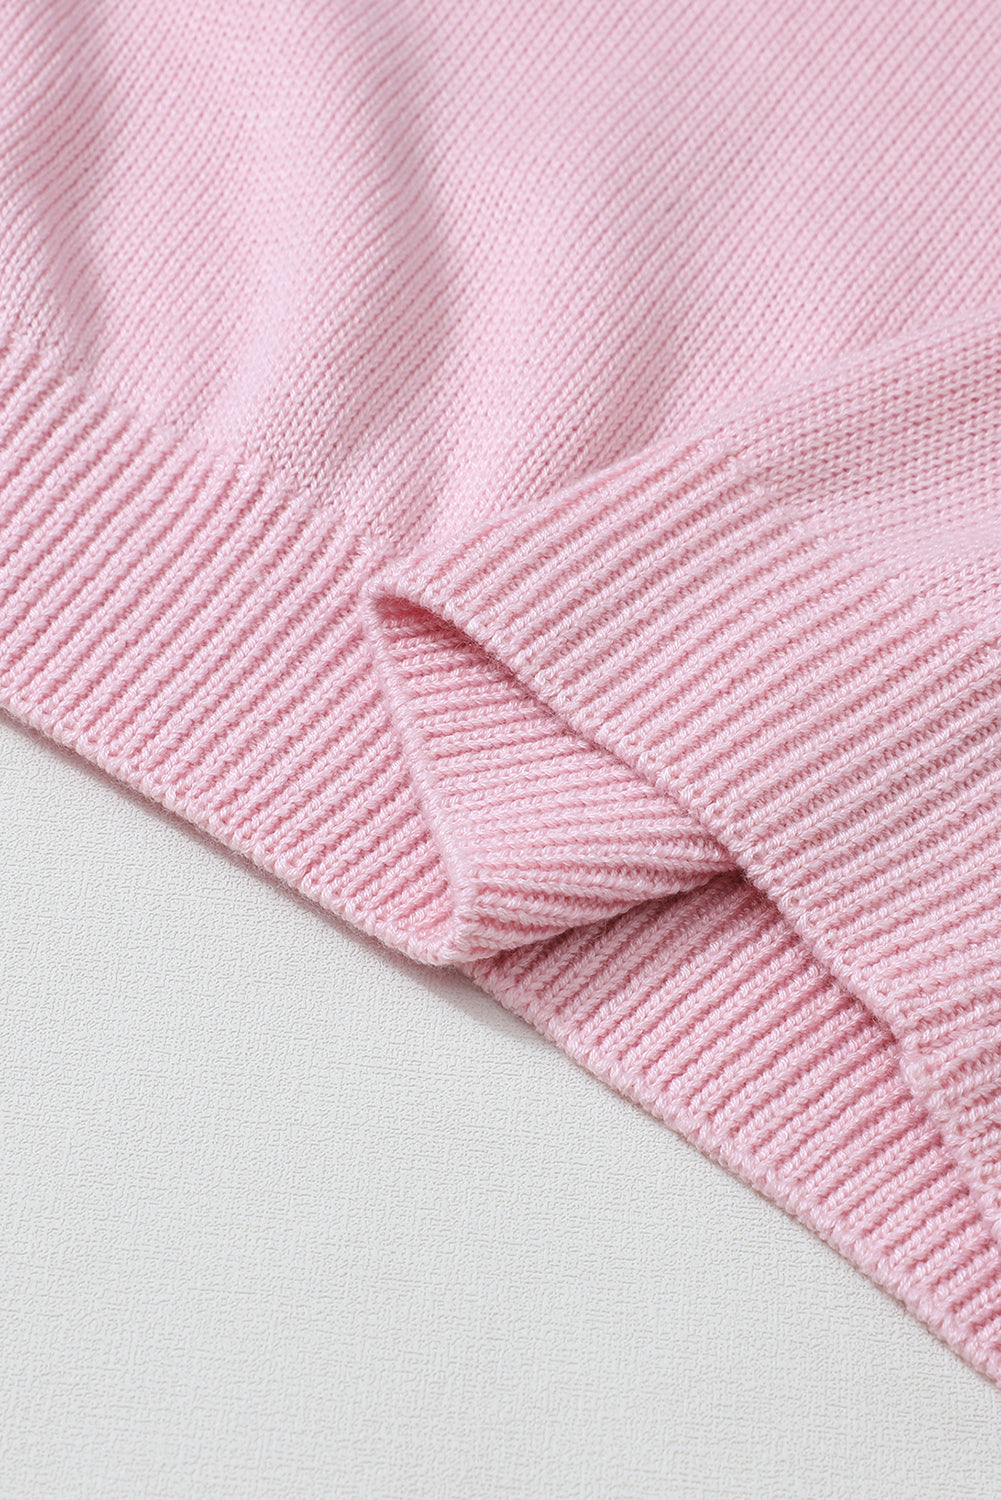 Rosafarbener lockerer Pullover mit ausgehöhlter Spitze und V-Ausschnitt